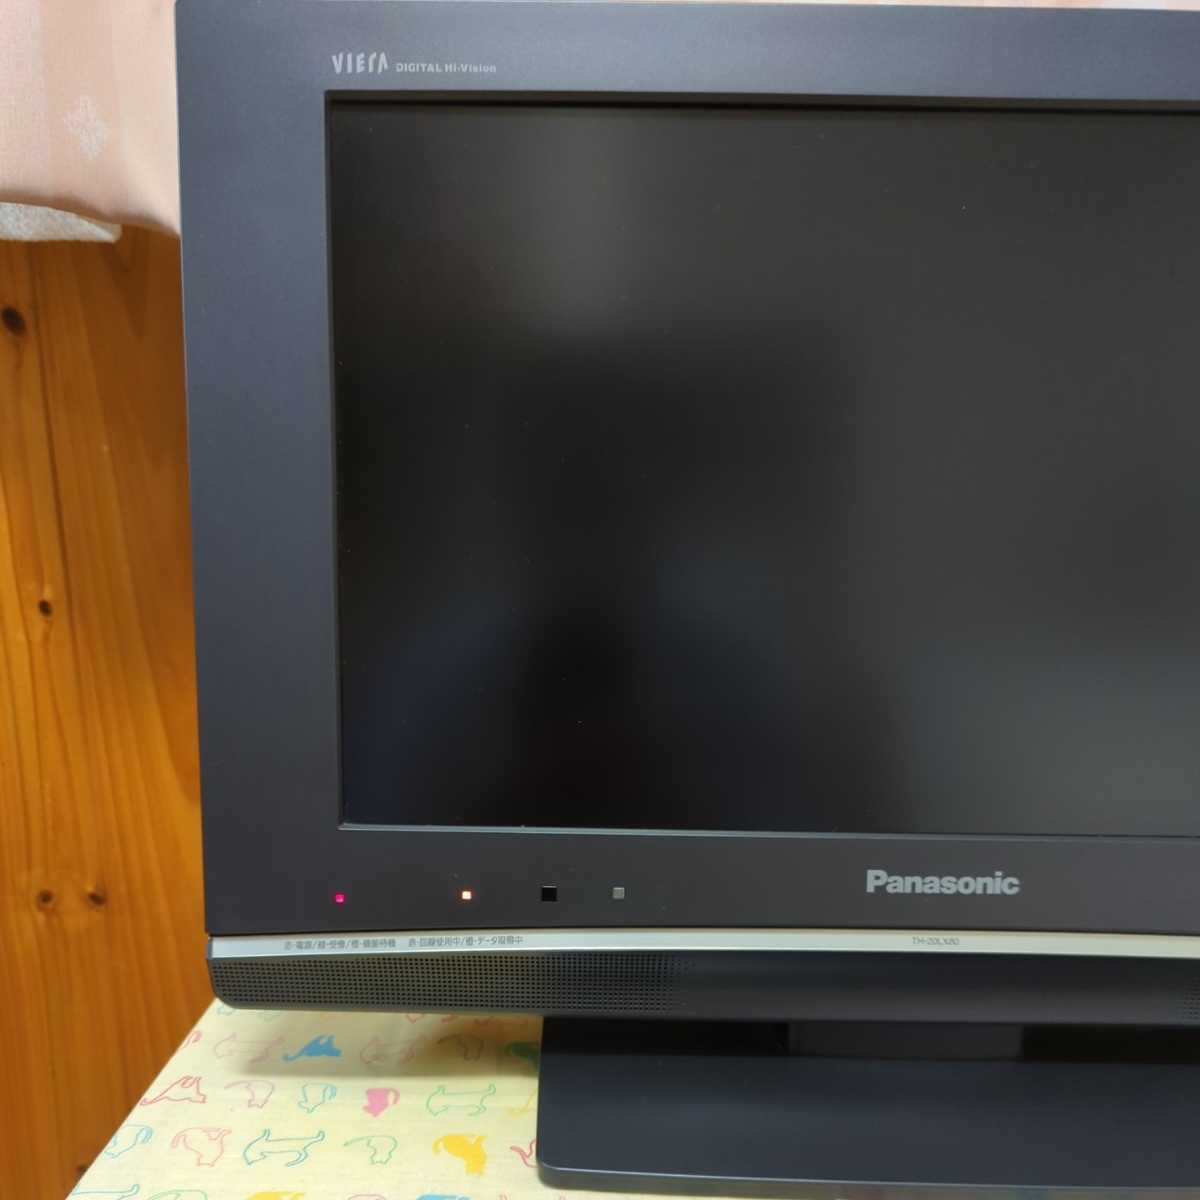 Panasonic パナソニック ビエラ 液晶テレビ TH-20LX80-H 2008年製 20V